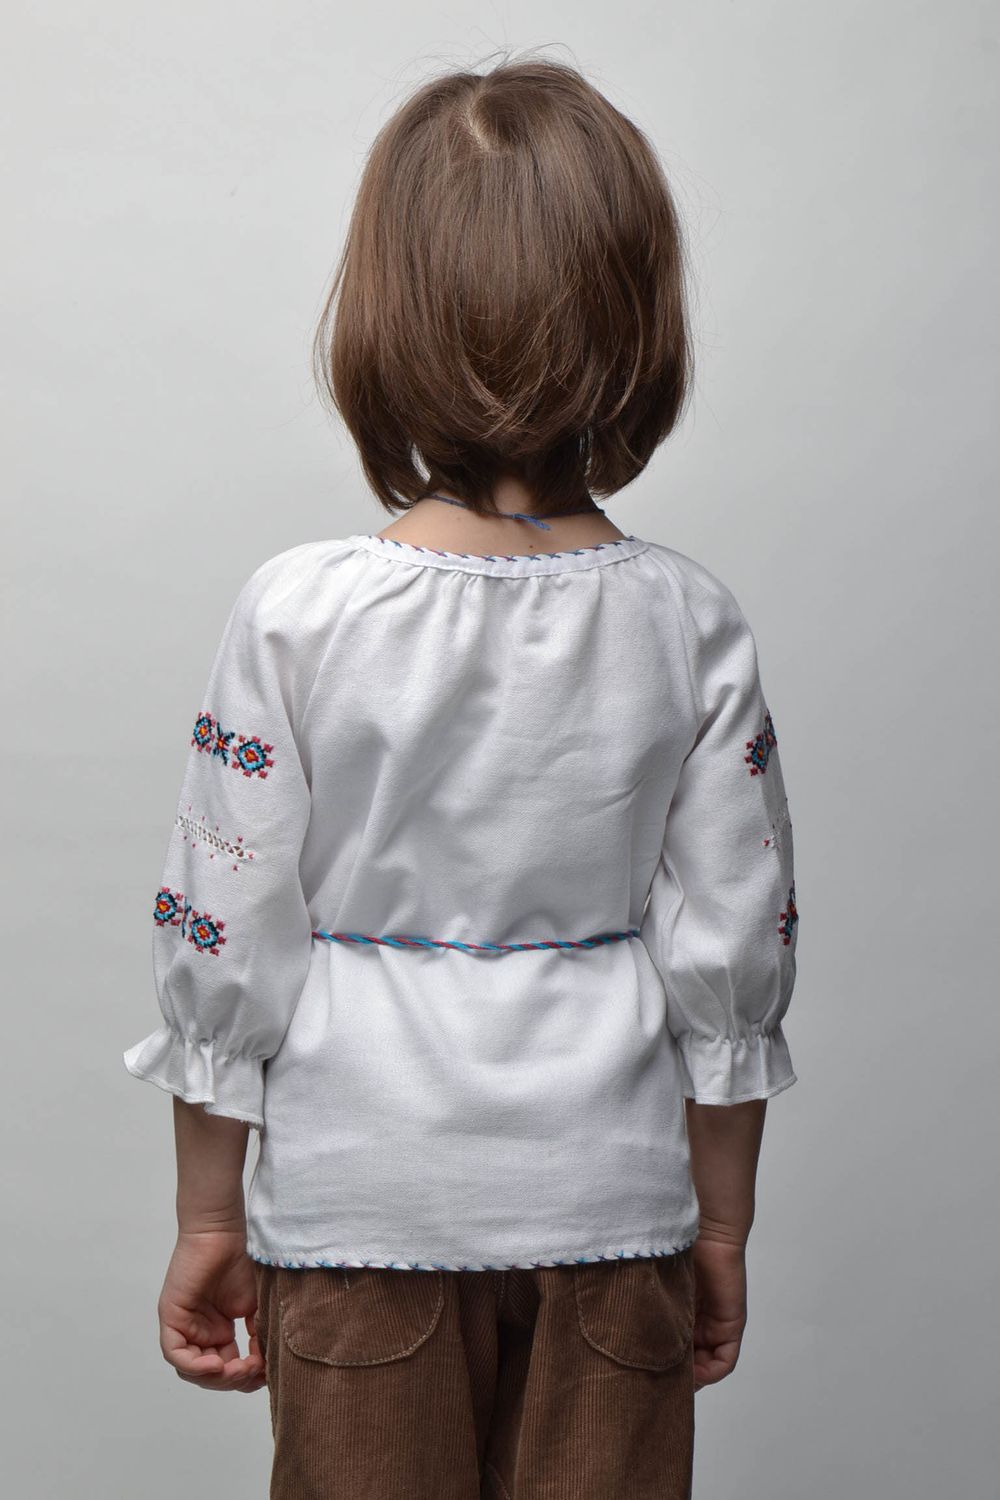 Camisa bordada con motivos vegetales para niña de 5-7 años de edad foto 4